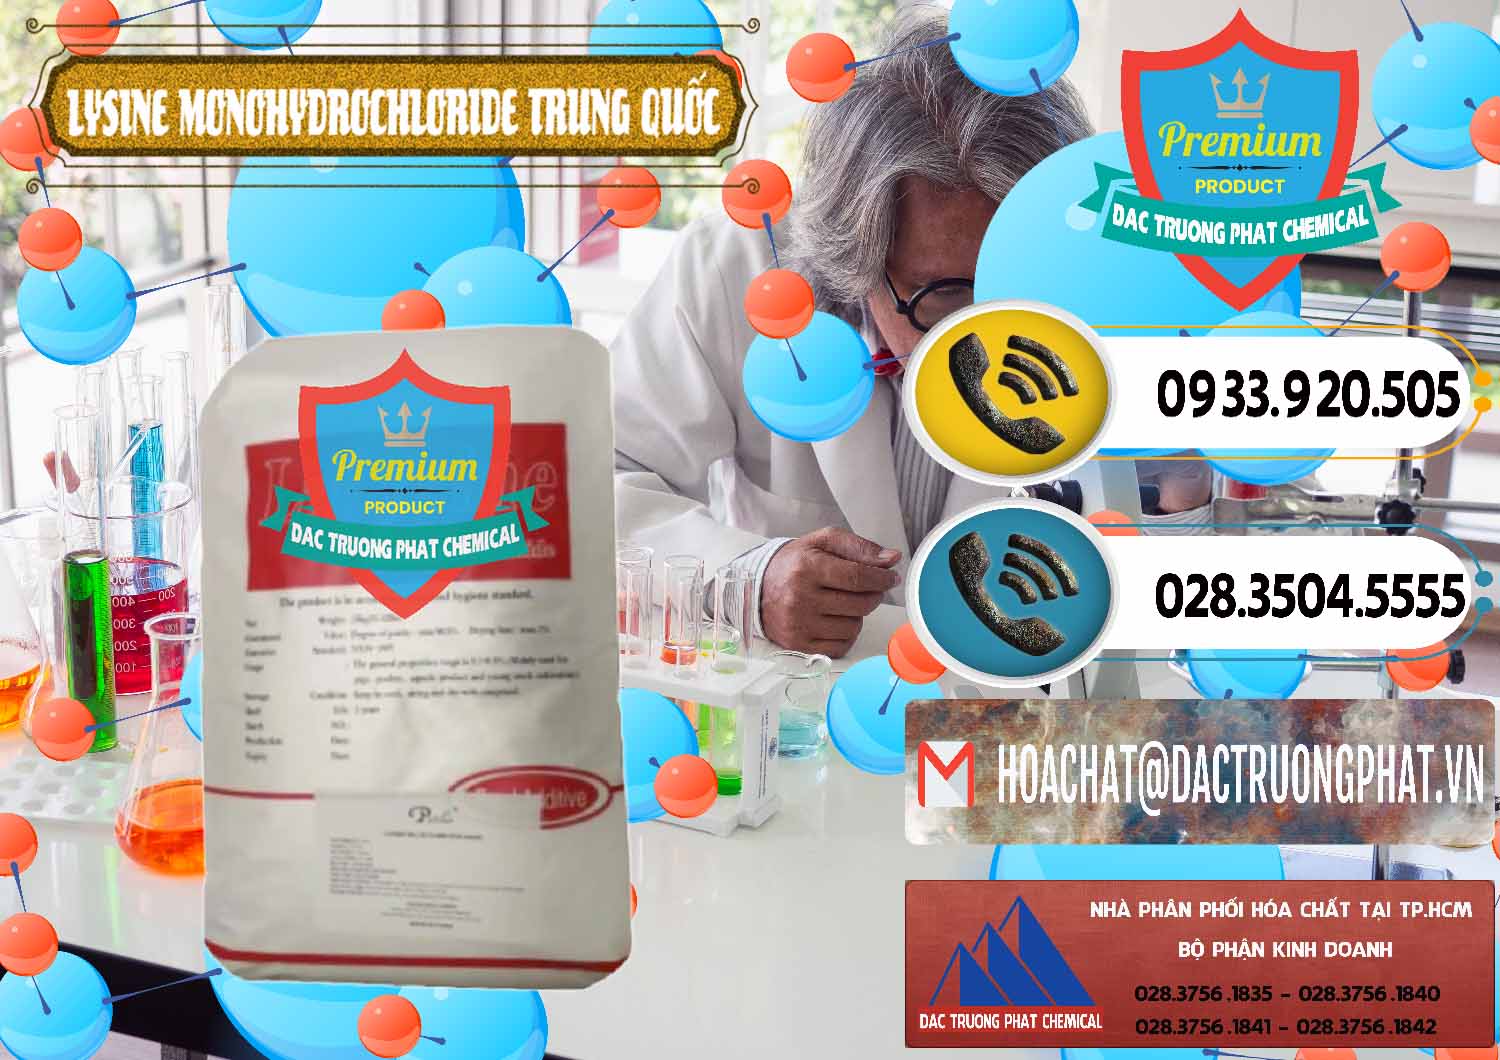 Cty bán - cung ứng L-Lysine Monohydrochloride Feed Grade Trung Quốc China - 0454 - Công ty chuyên phân phối _ cung ứng hóa chất tại TP.HCM - hoachatdetnhuom.vn